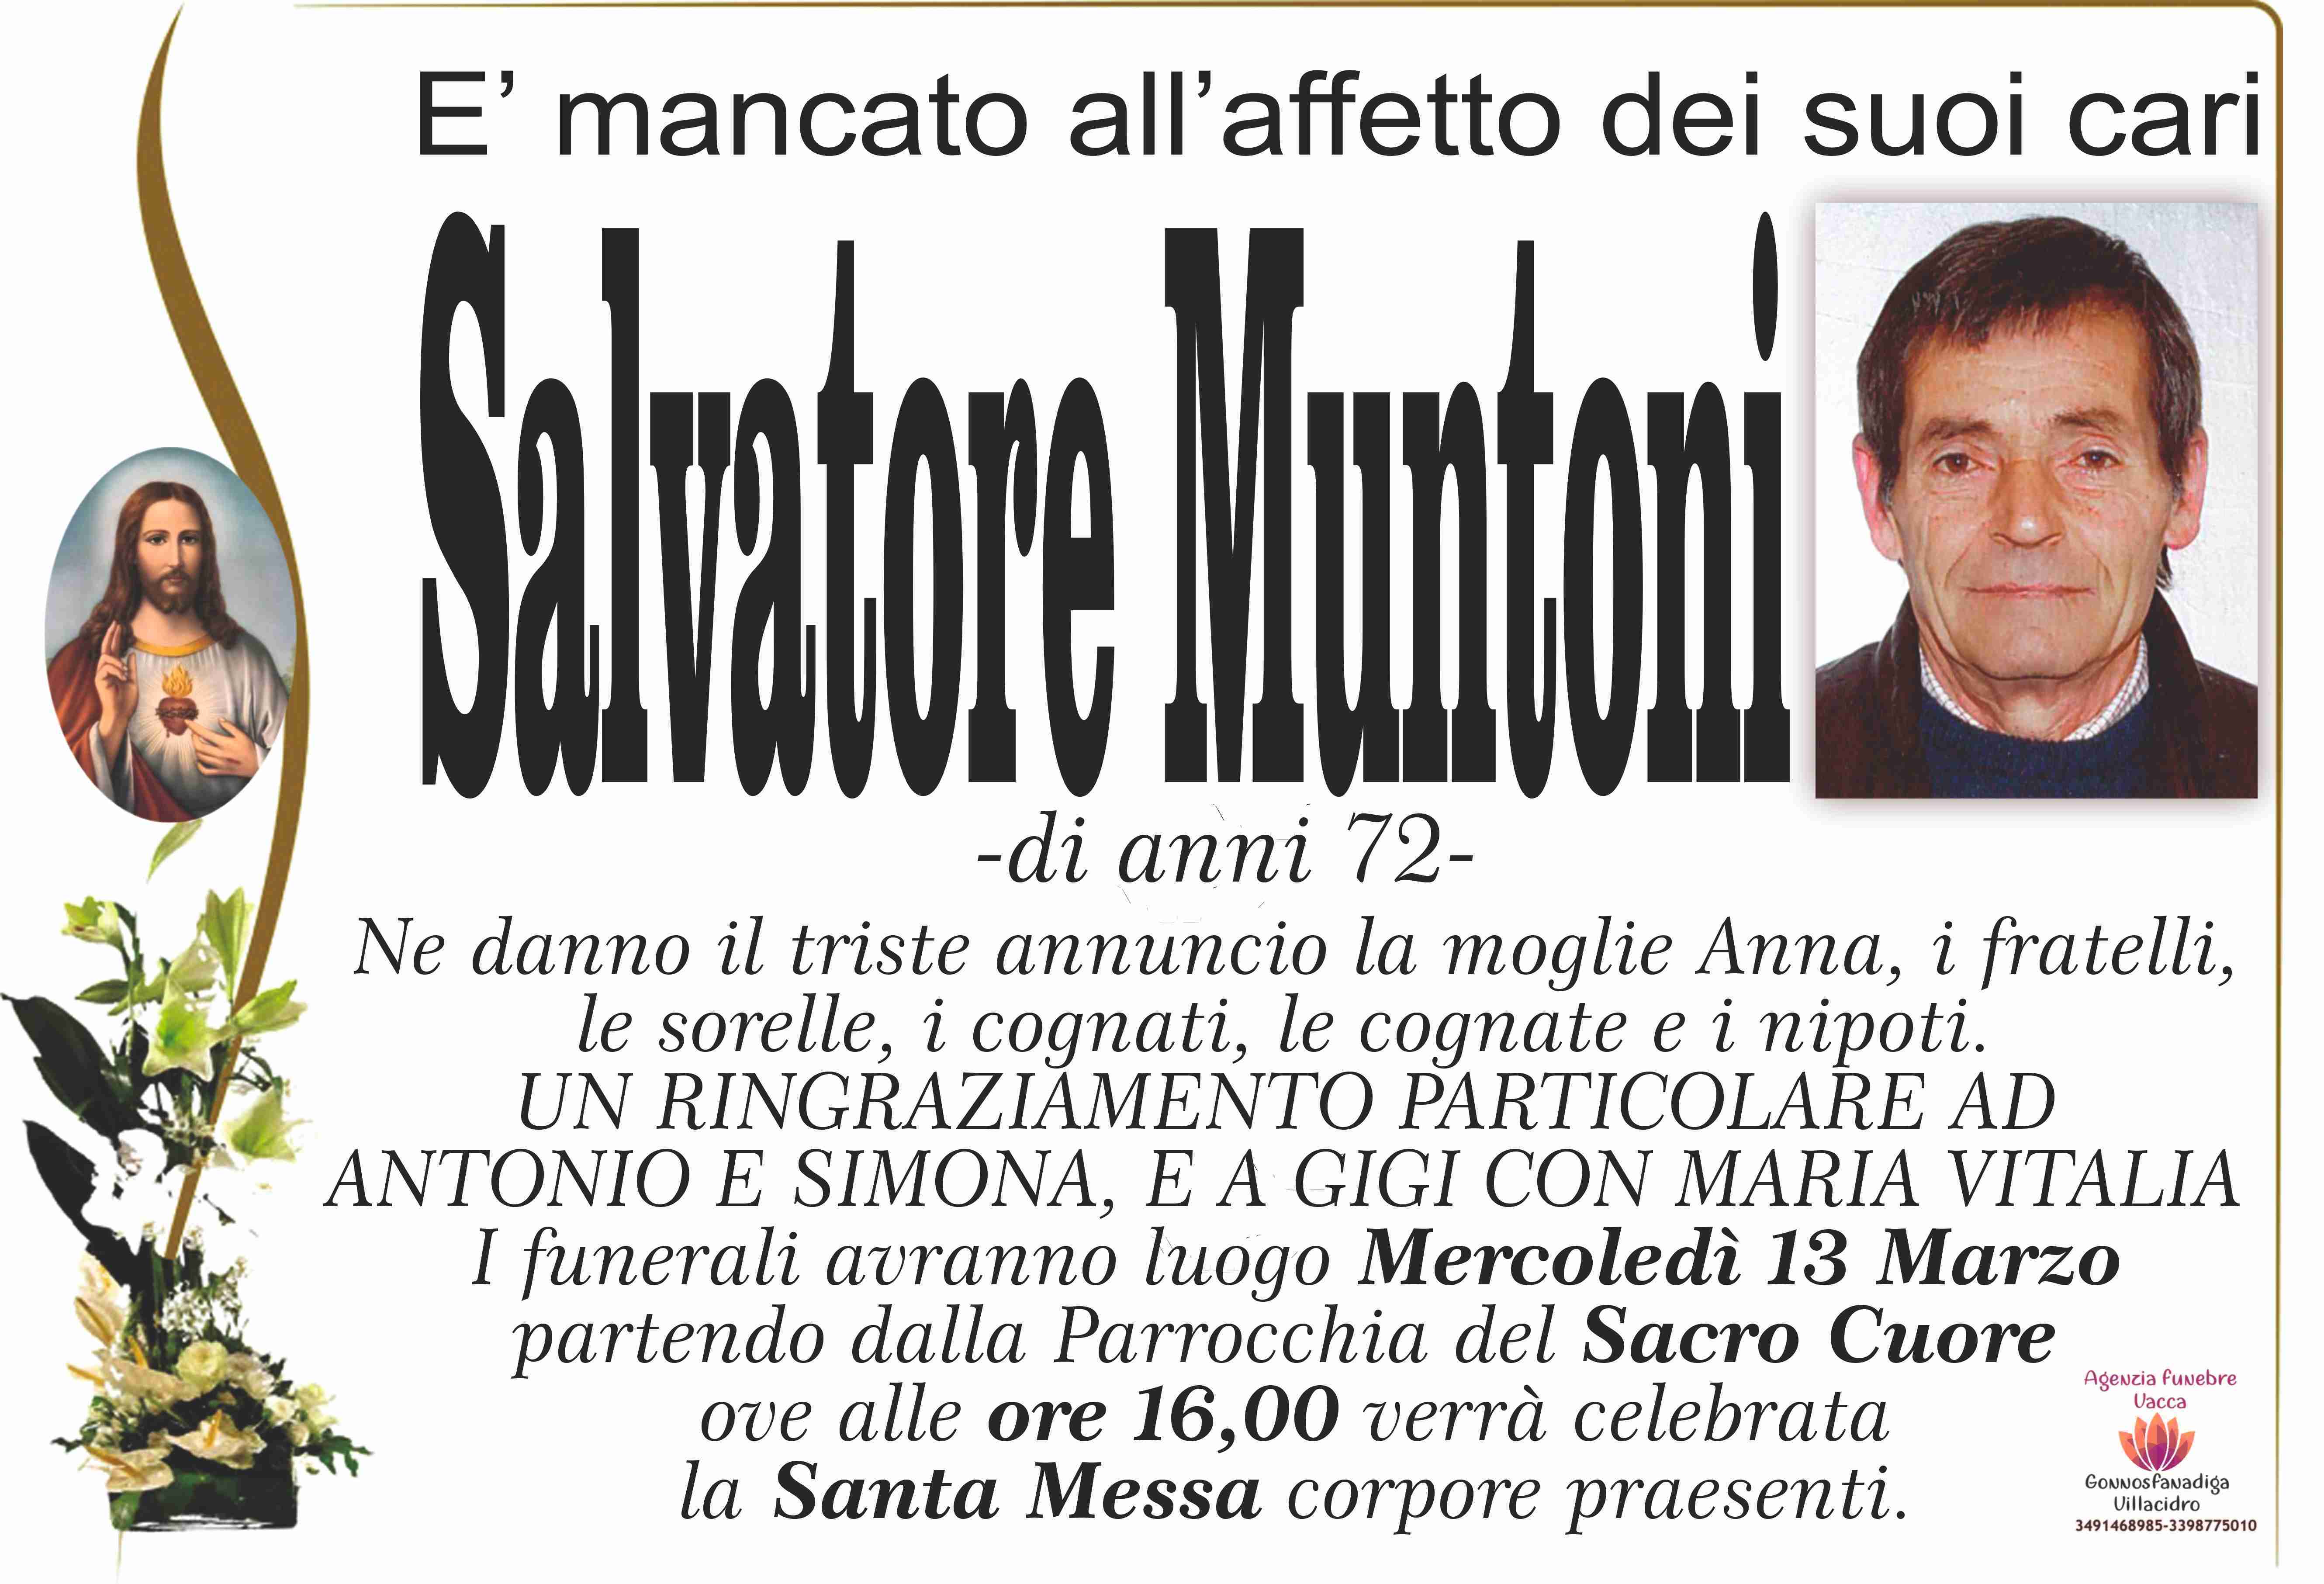 Salvatore Muntoni